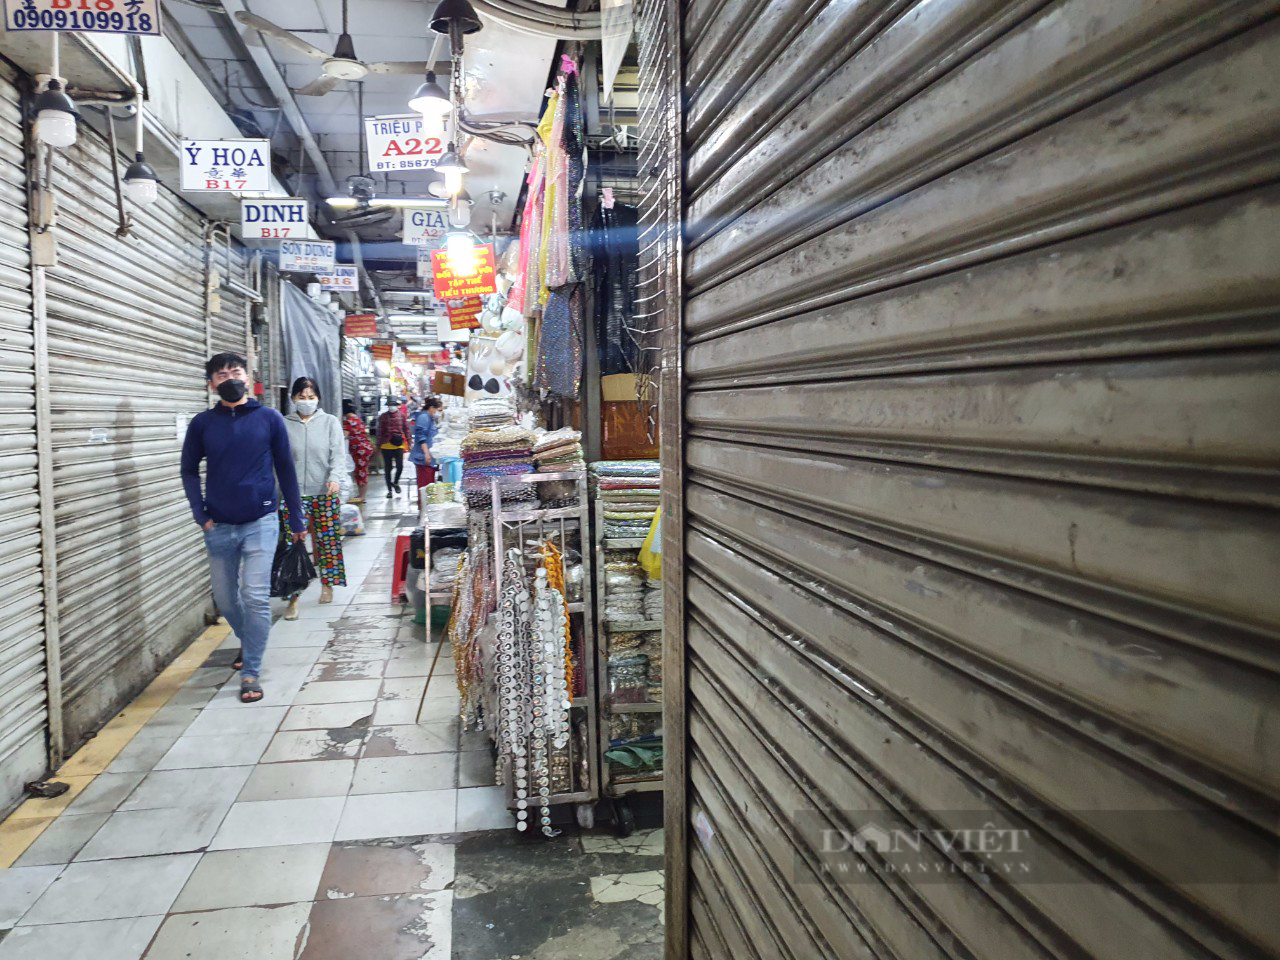 Tiểu thương chợ Đại Quang Minh &quot;tố&quot; bị chủ chợ cắt điện trong đêm - Ảnh 1.